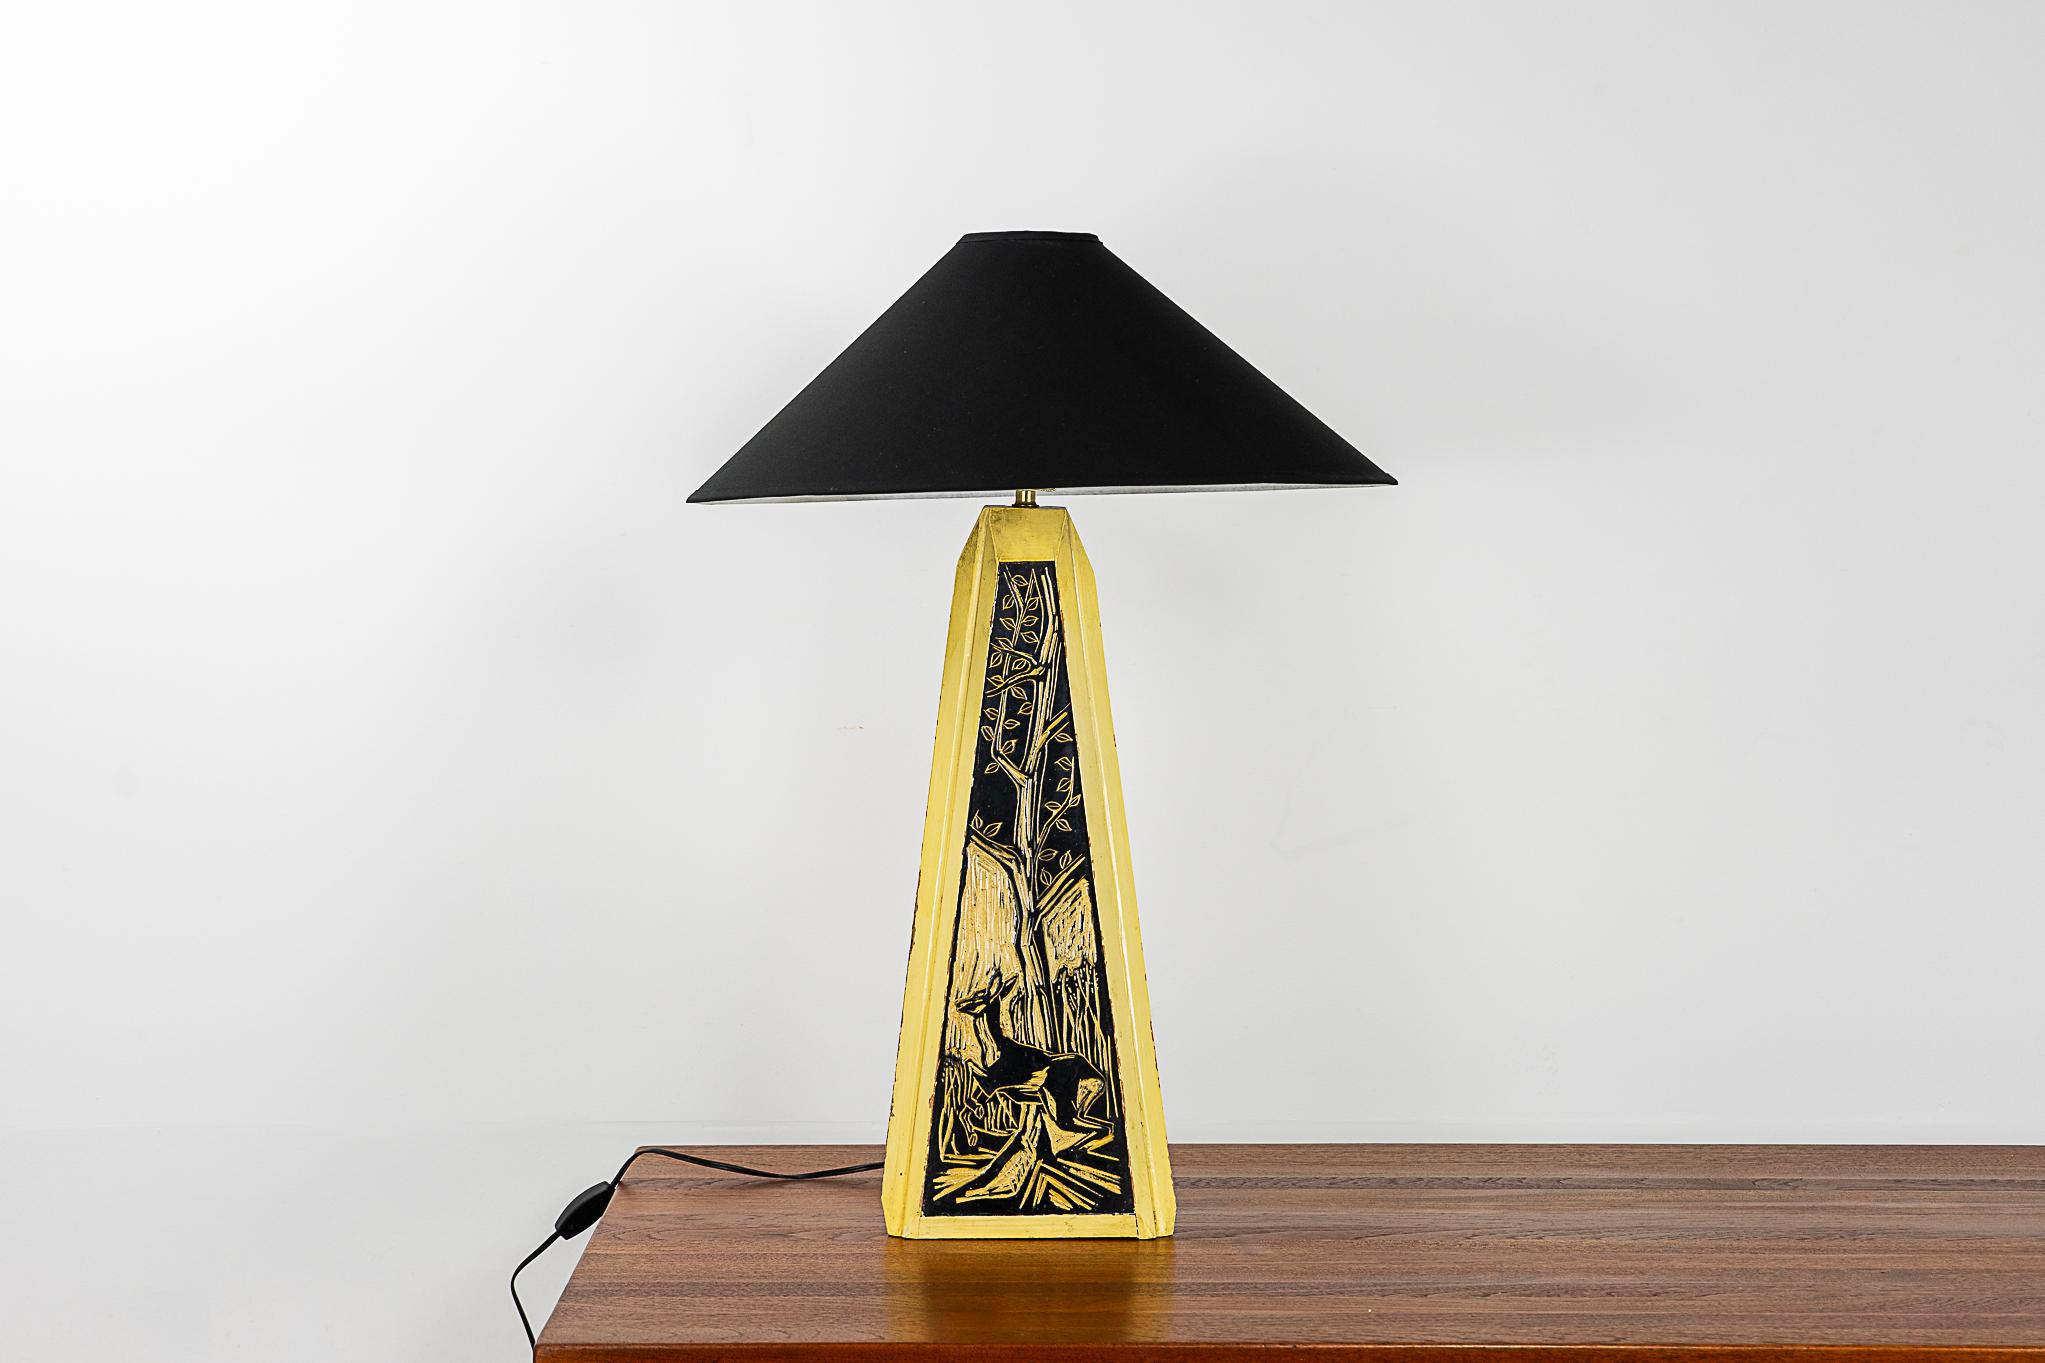 Lampe de table danoise en bois sculpté, vers les années 1960. Lampe incroyablement unique, motif en creux jaune et noir d'un cerf dans les bois sur chaque lampe. Abat-jour en tissu sur mesure et nouveau câblage avec interrupteur en ligne. Une lampe